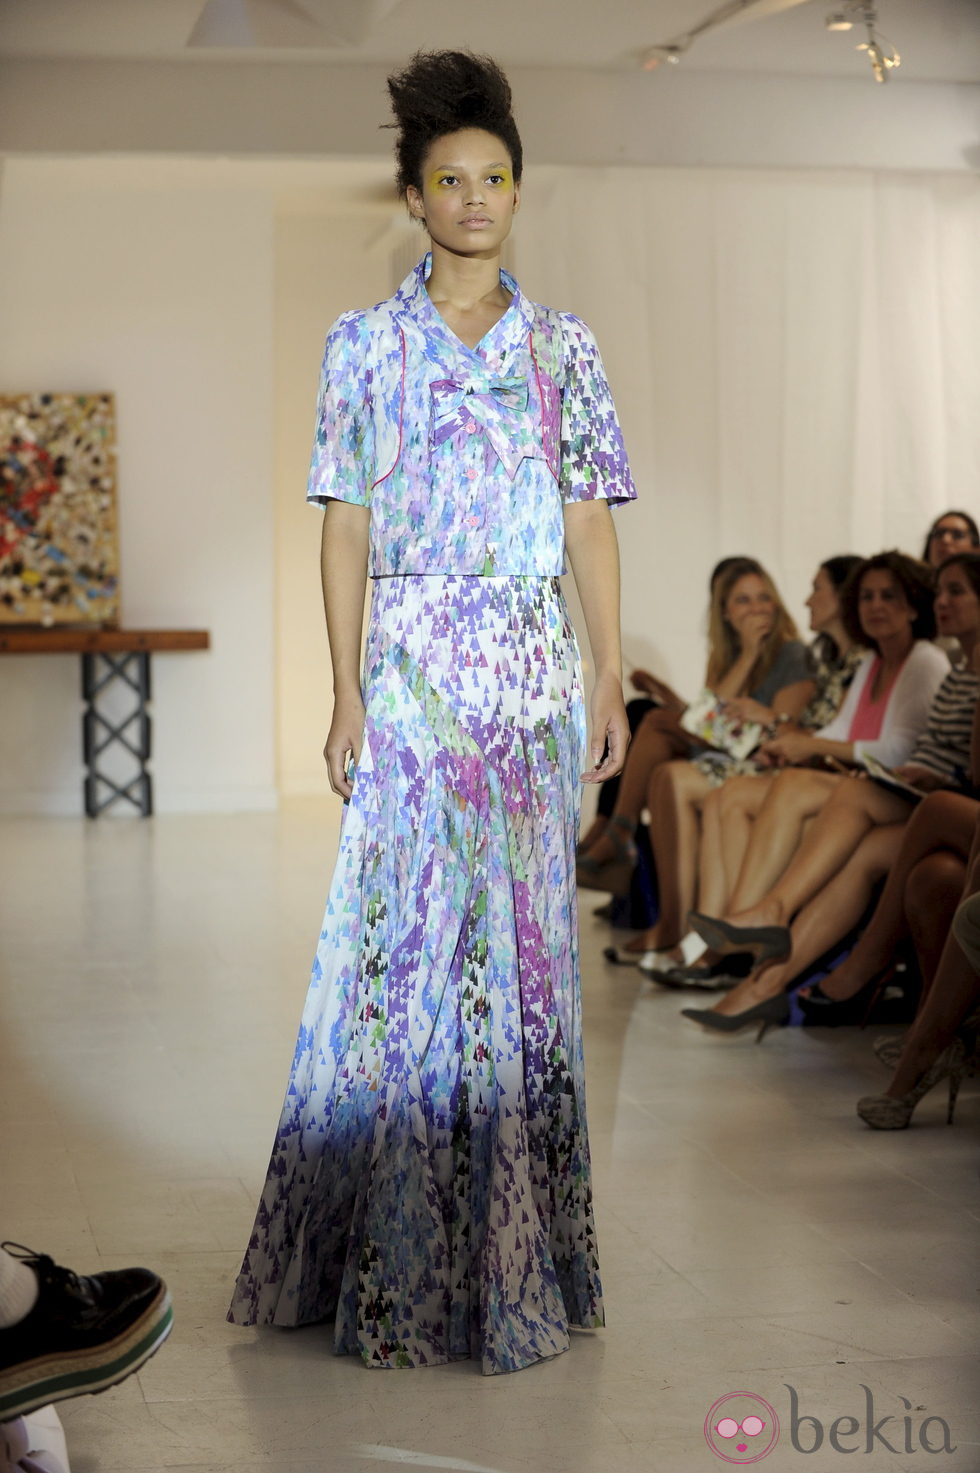 Vestido con estampado geométrico de Josep Font, colección primavera 2012